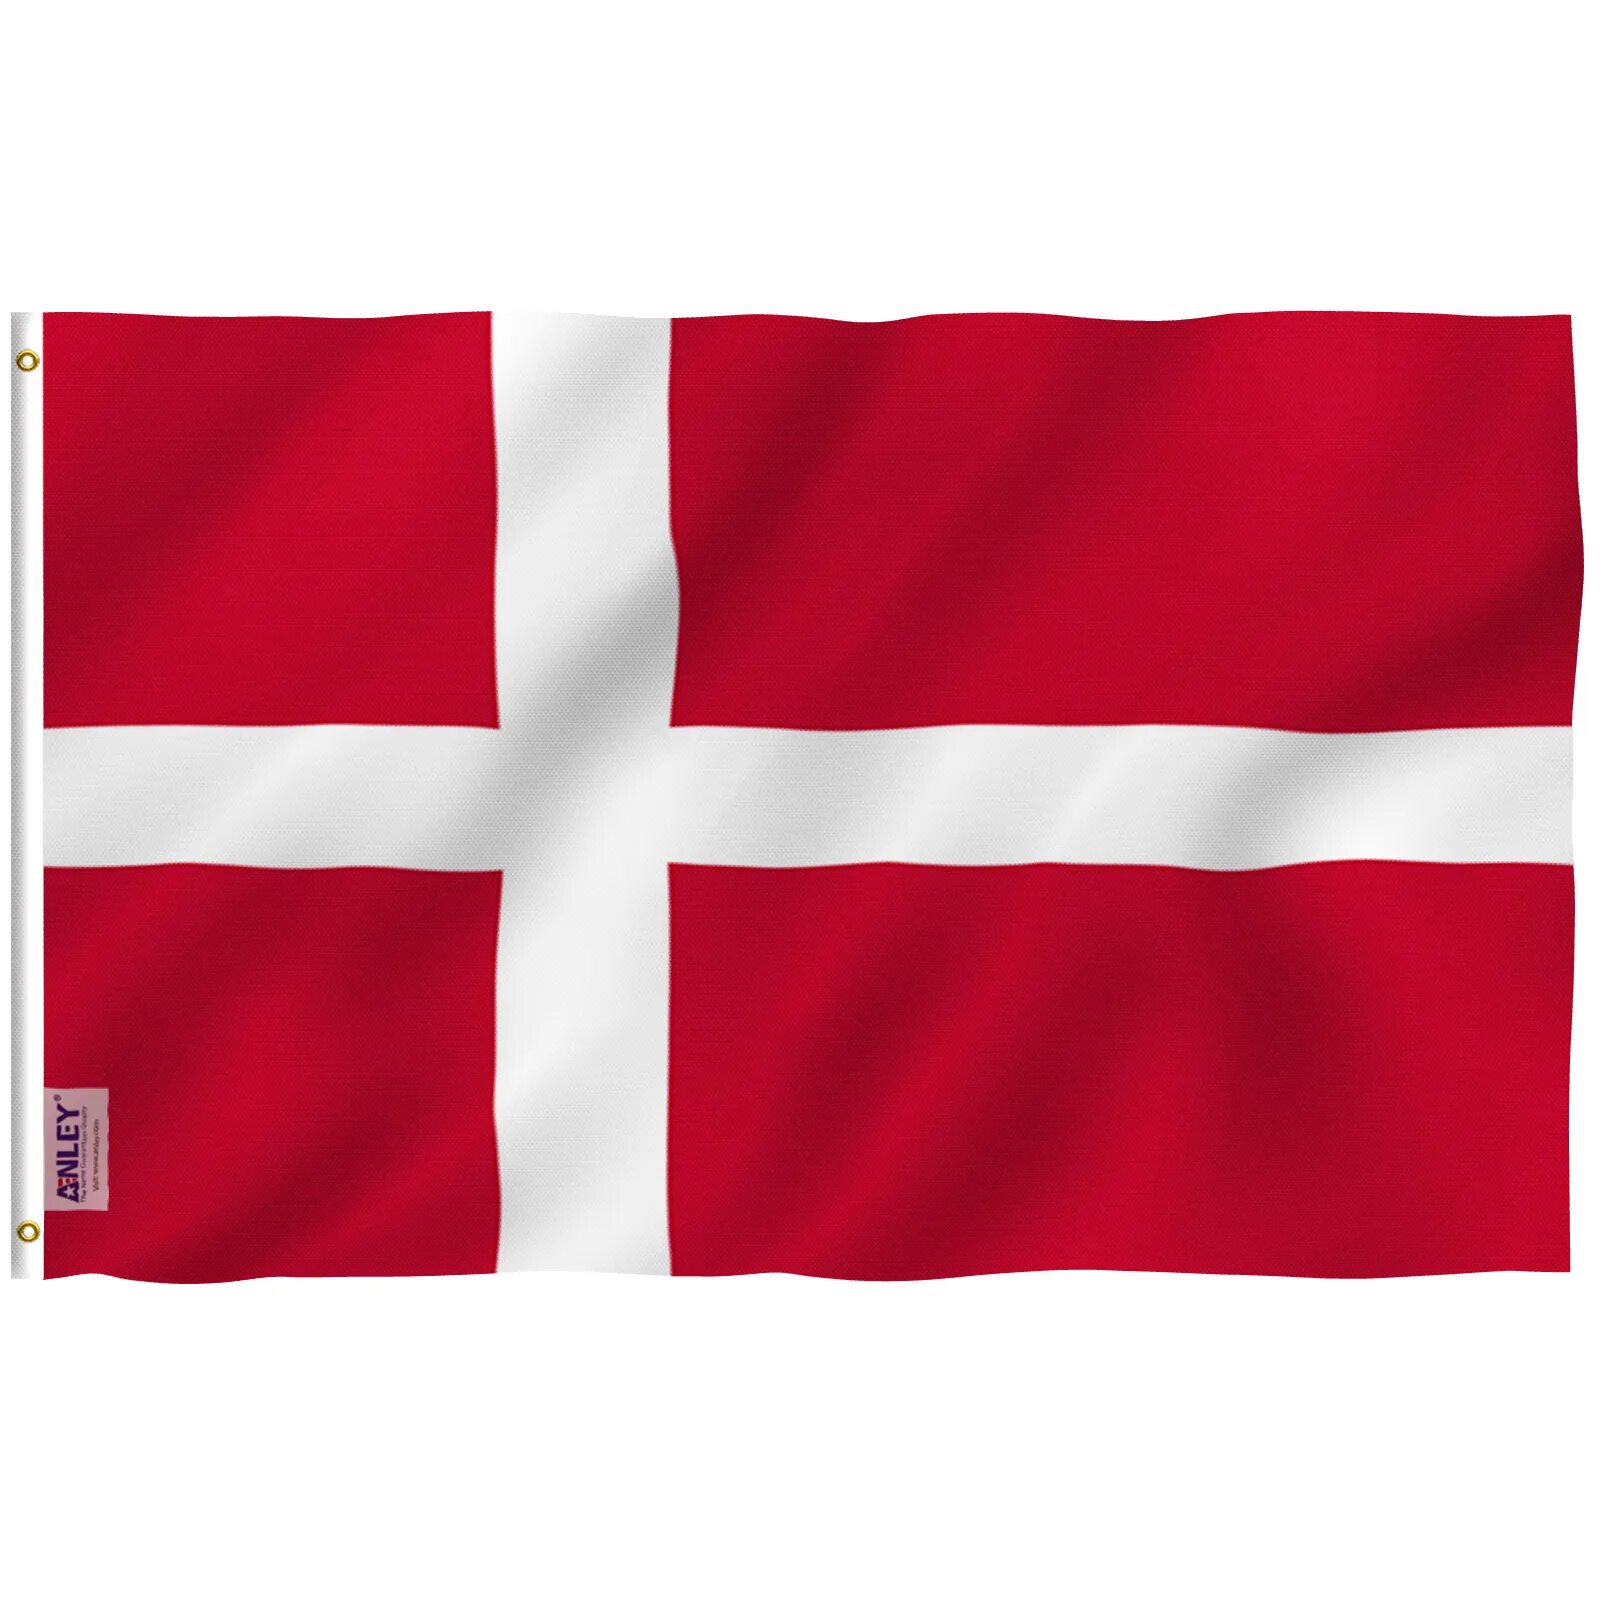 Как выглядит флаг дании. Флаг Дании. Флаг Дании 1914. Денмарк флаг. Флаг Дании 1219 года.